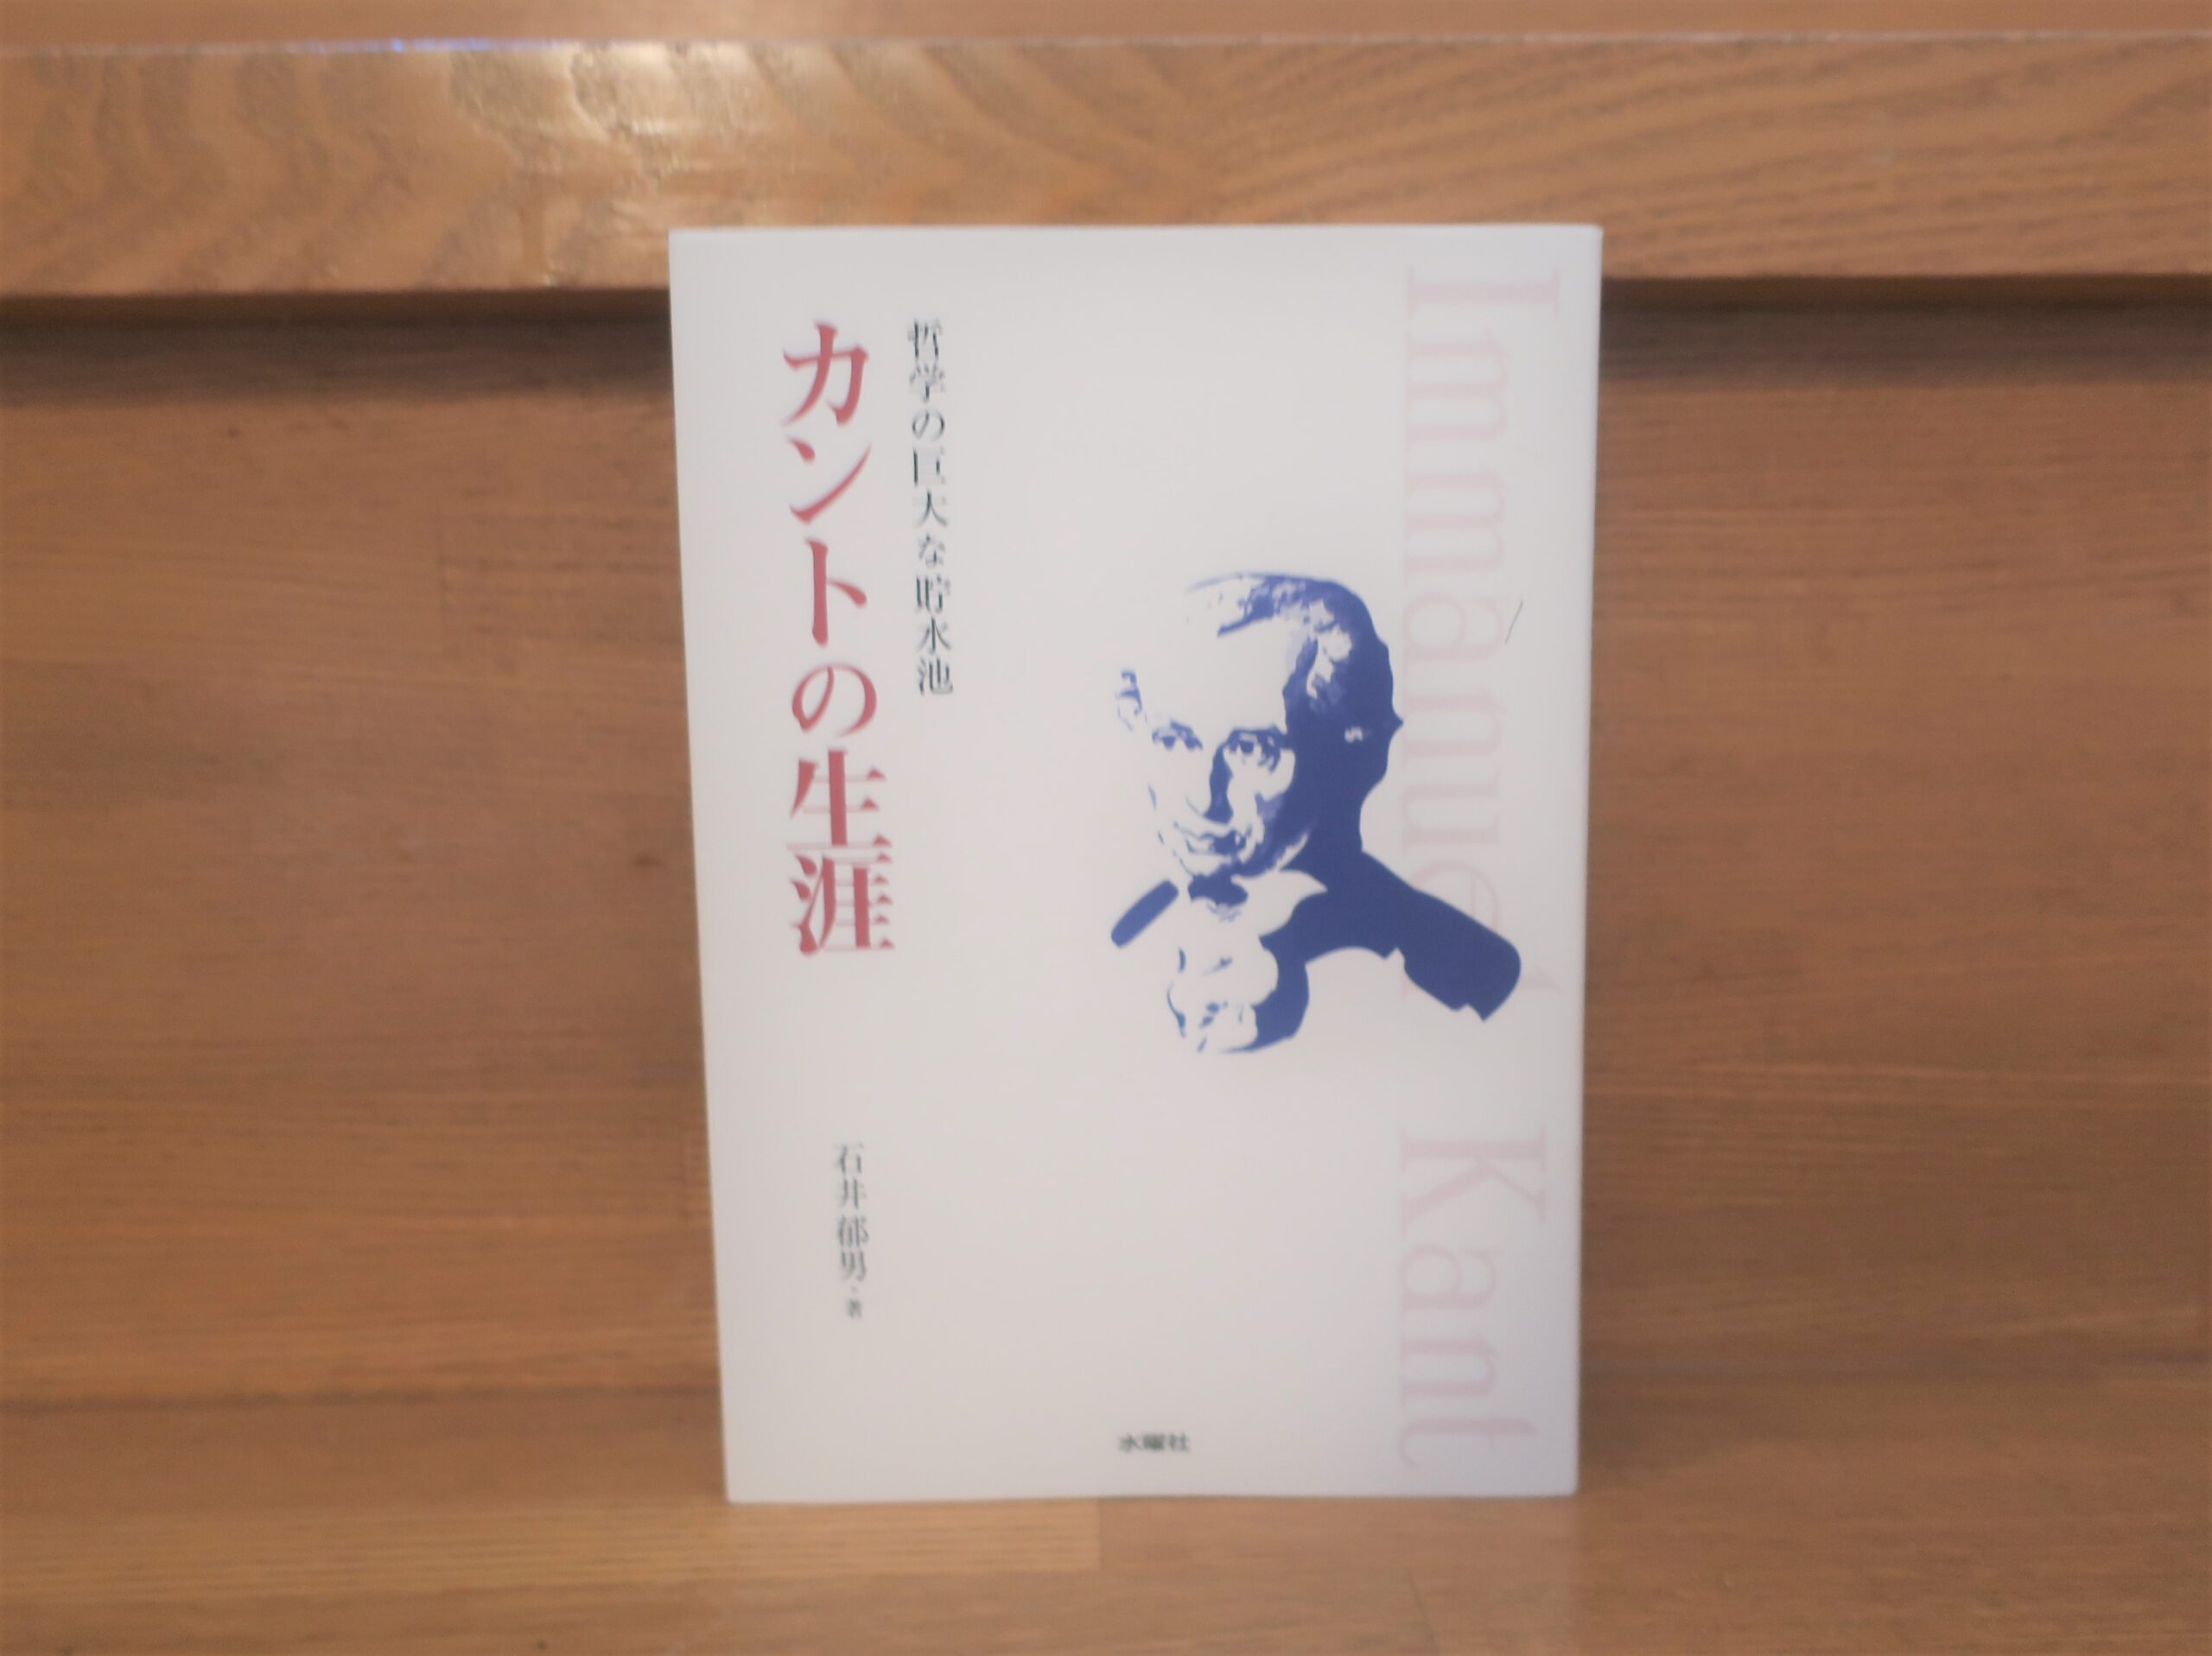 石井郁男 カントの生涯 哲学の巨大な貯水池 おすすめカント伝記